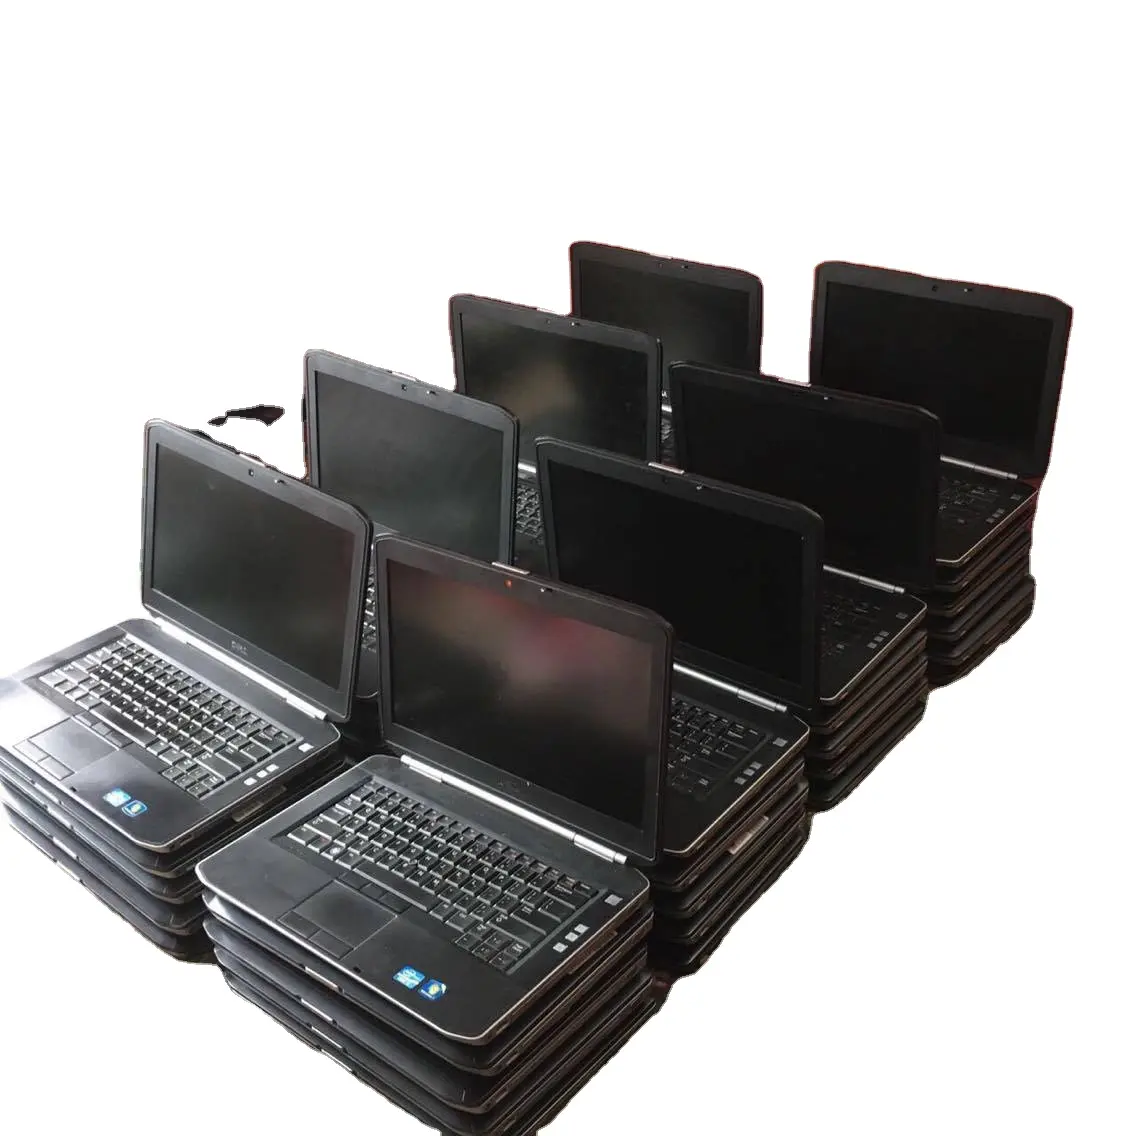 แล็ปท็อปมือสองสำหรับนักเรียนแล็ปท็อปคอมพิวเตอร์ตั้งโต๊ะที่ใช้อุปกรณ์อิเล็กทรอนิกส์